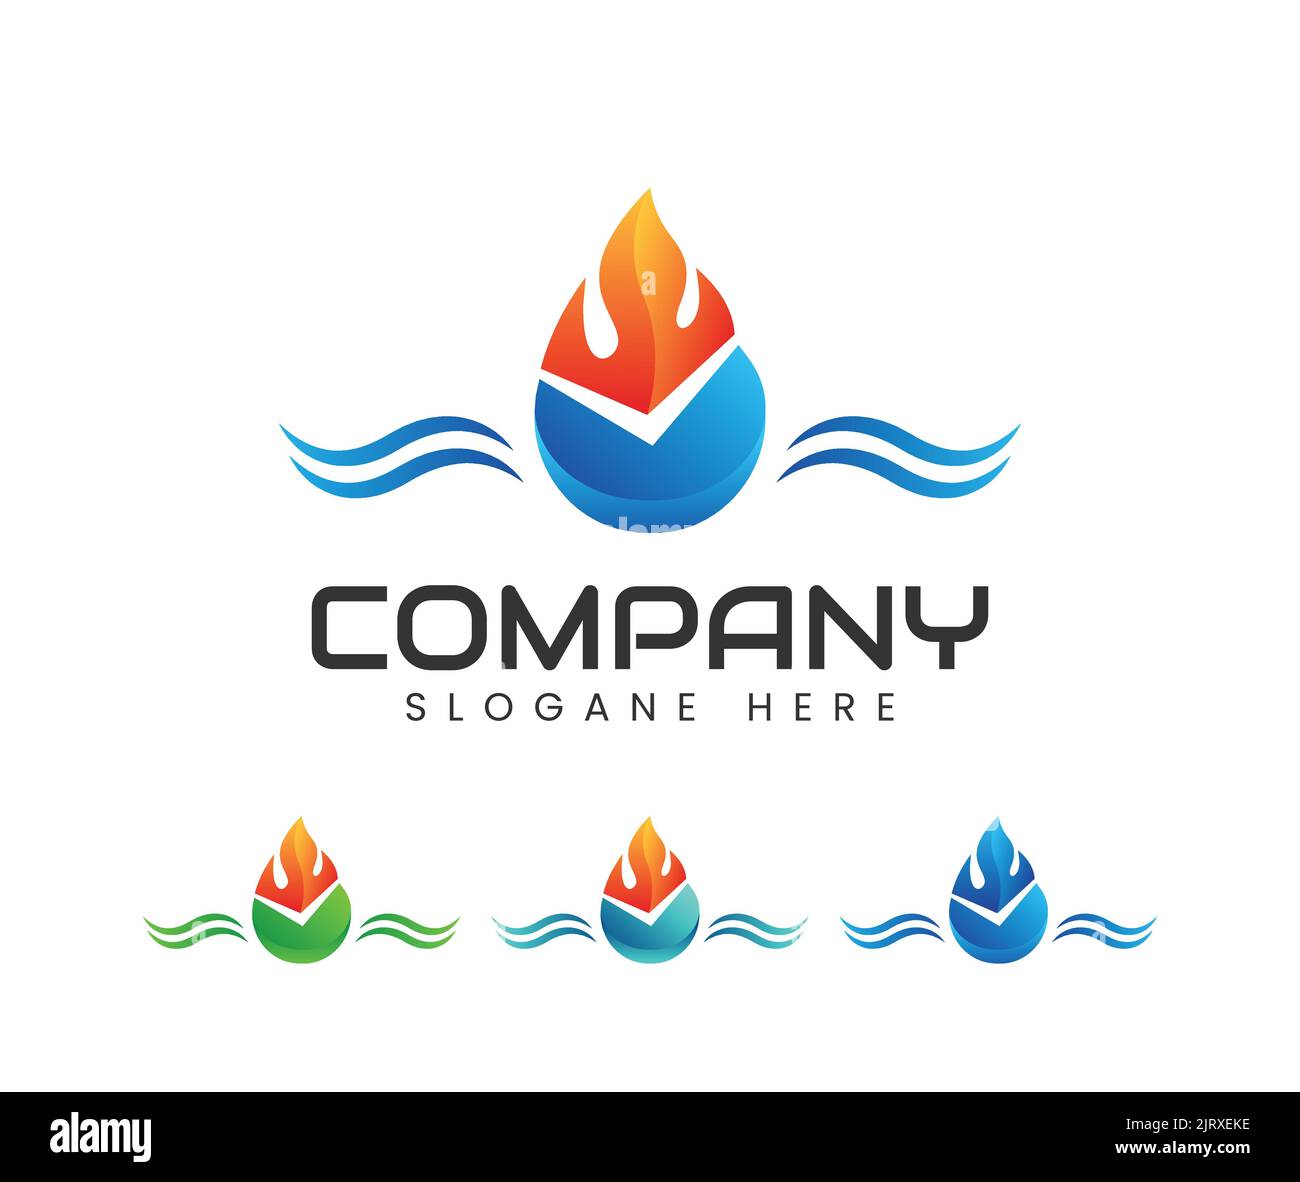 Disegno del logo dell'onda dell'acqua dell'impianto idraulico. Vettore del logo dell'acqua e del fuoco Illustrazione Vettoriale